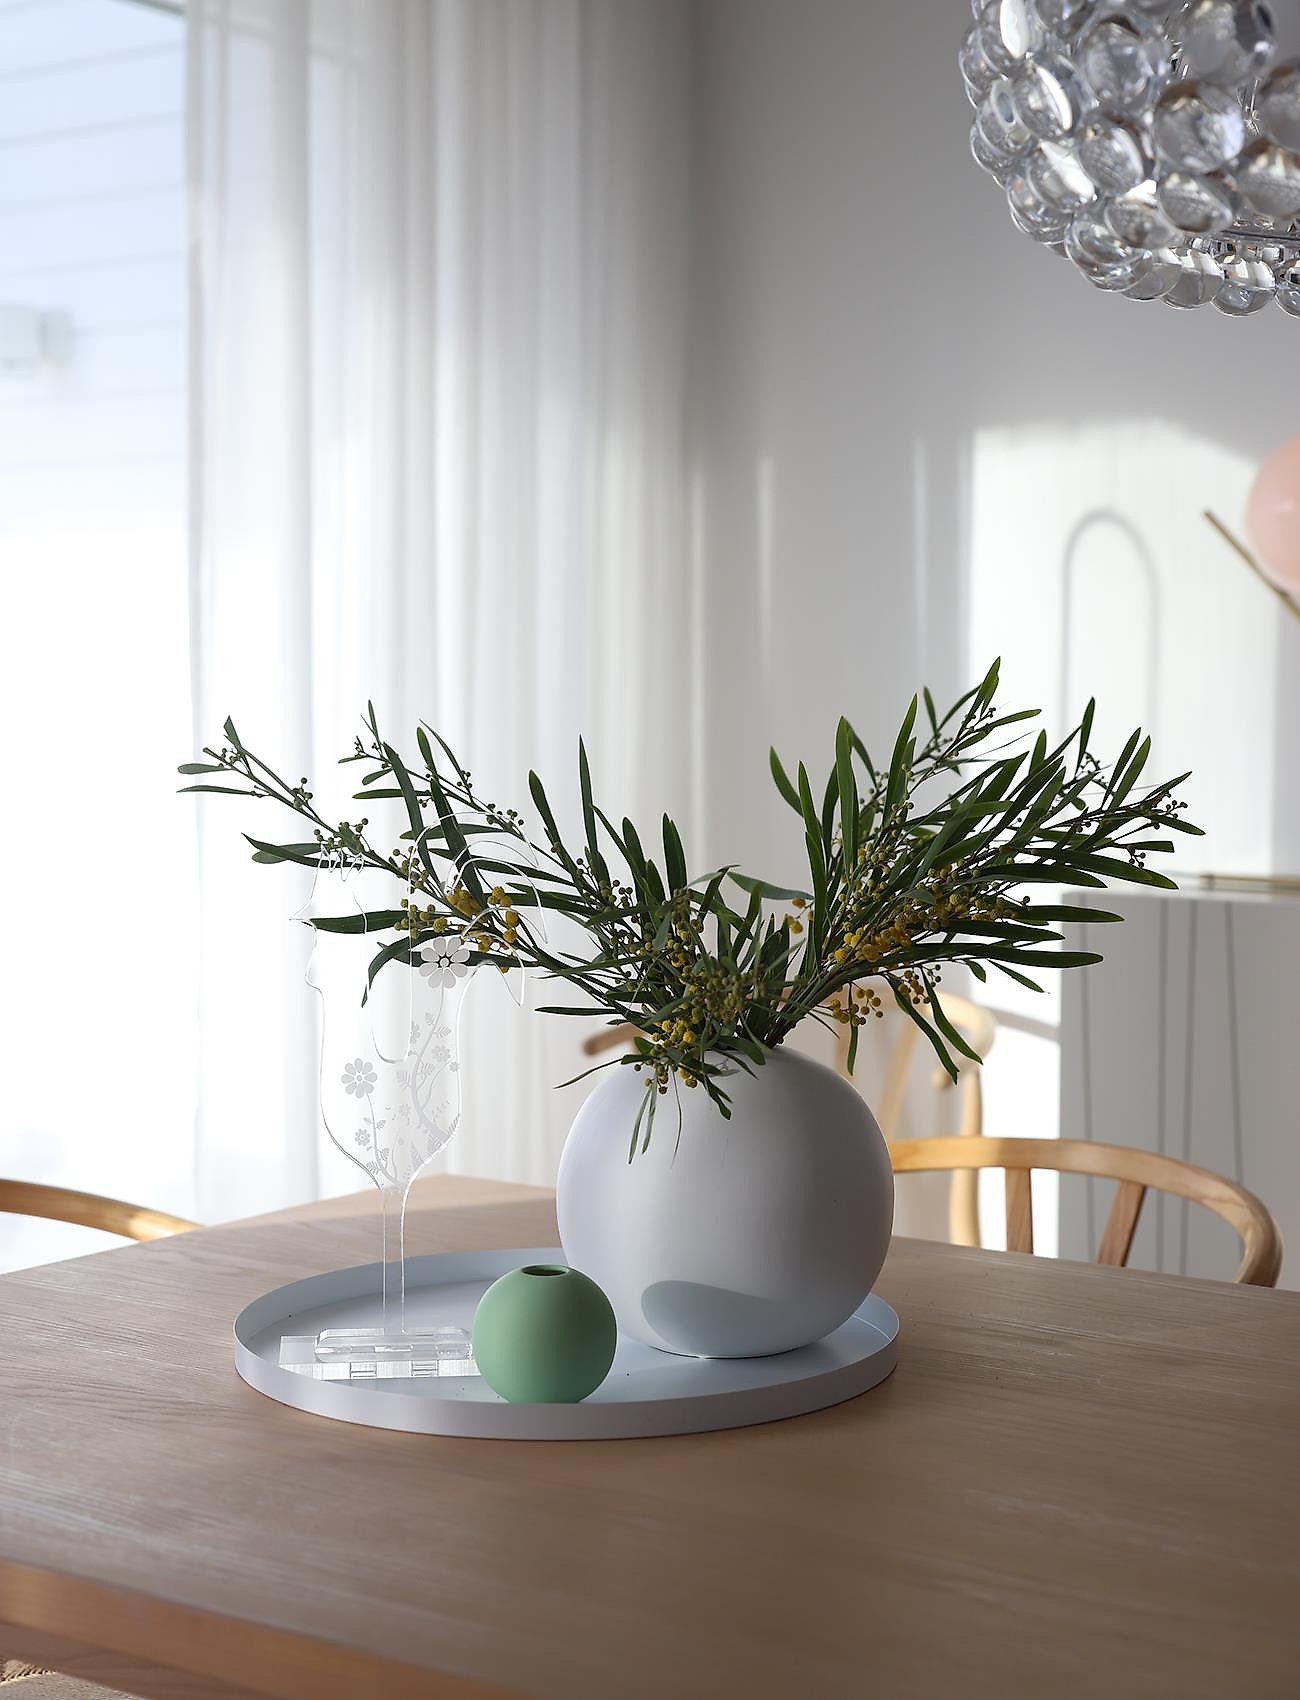 Cooee Design - Ball Vase 10cm - kleine vasen - apple - 1